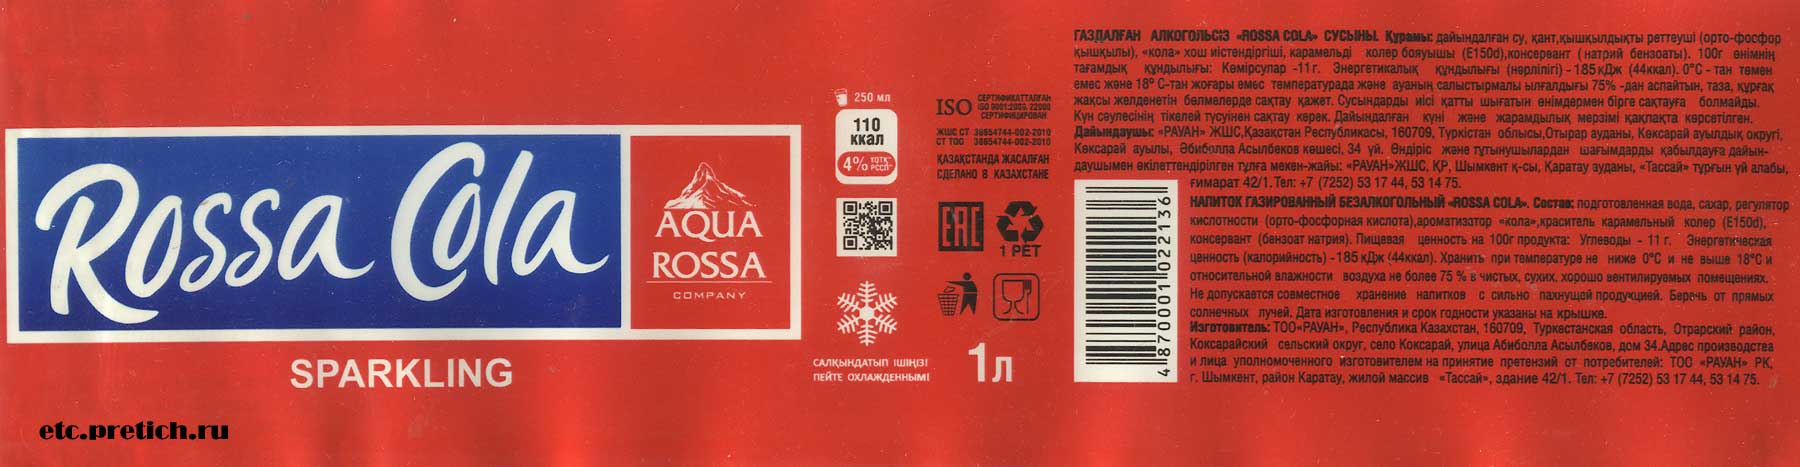 Rossa Cola что это за прохладительный напиток - полное описание и отзывы